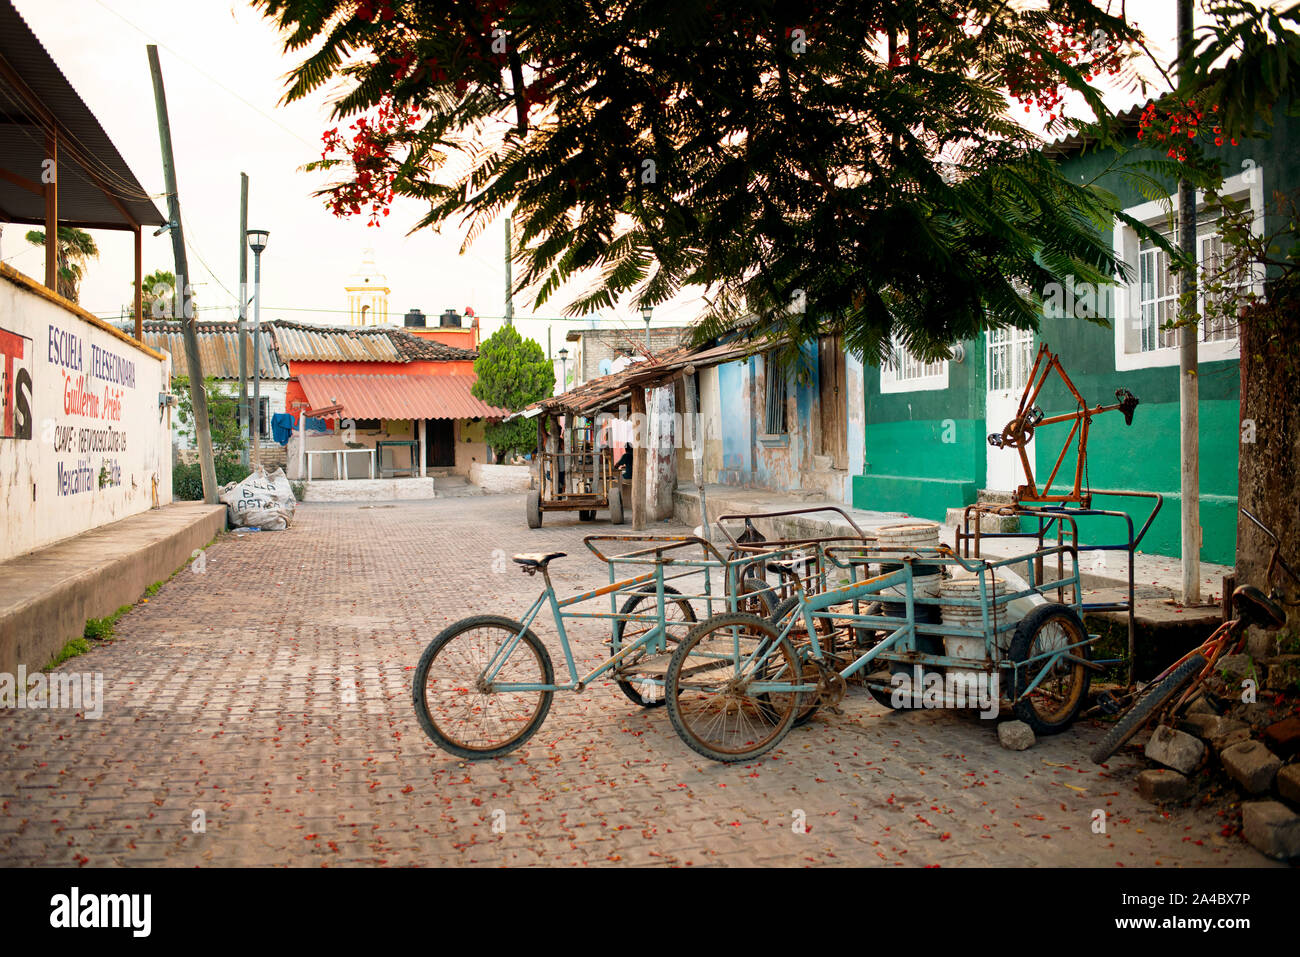 Scena di strada con le biciclette. Le biciclette sono gli unici mezzi di trasporto all'interno della piccola e tranquilla isola di Mexcaltitán, Nayarit, Messico, Lug 2019 Foto Stock